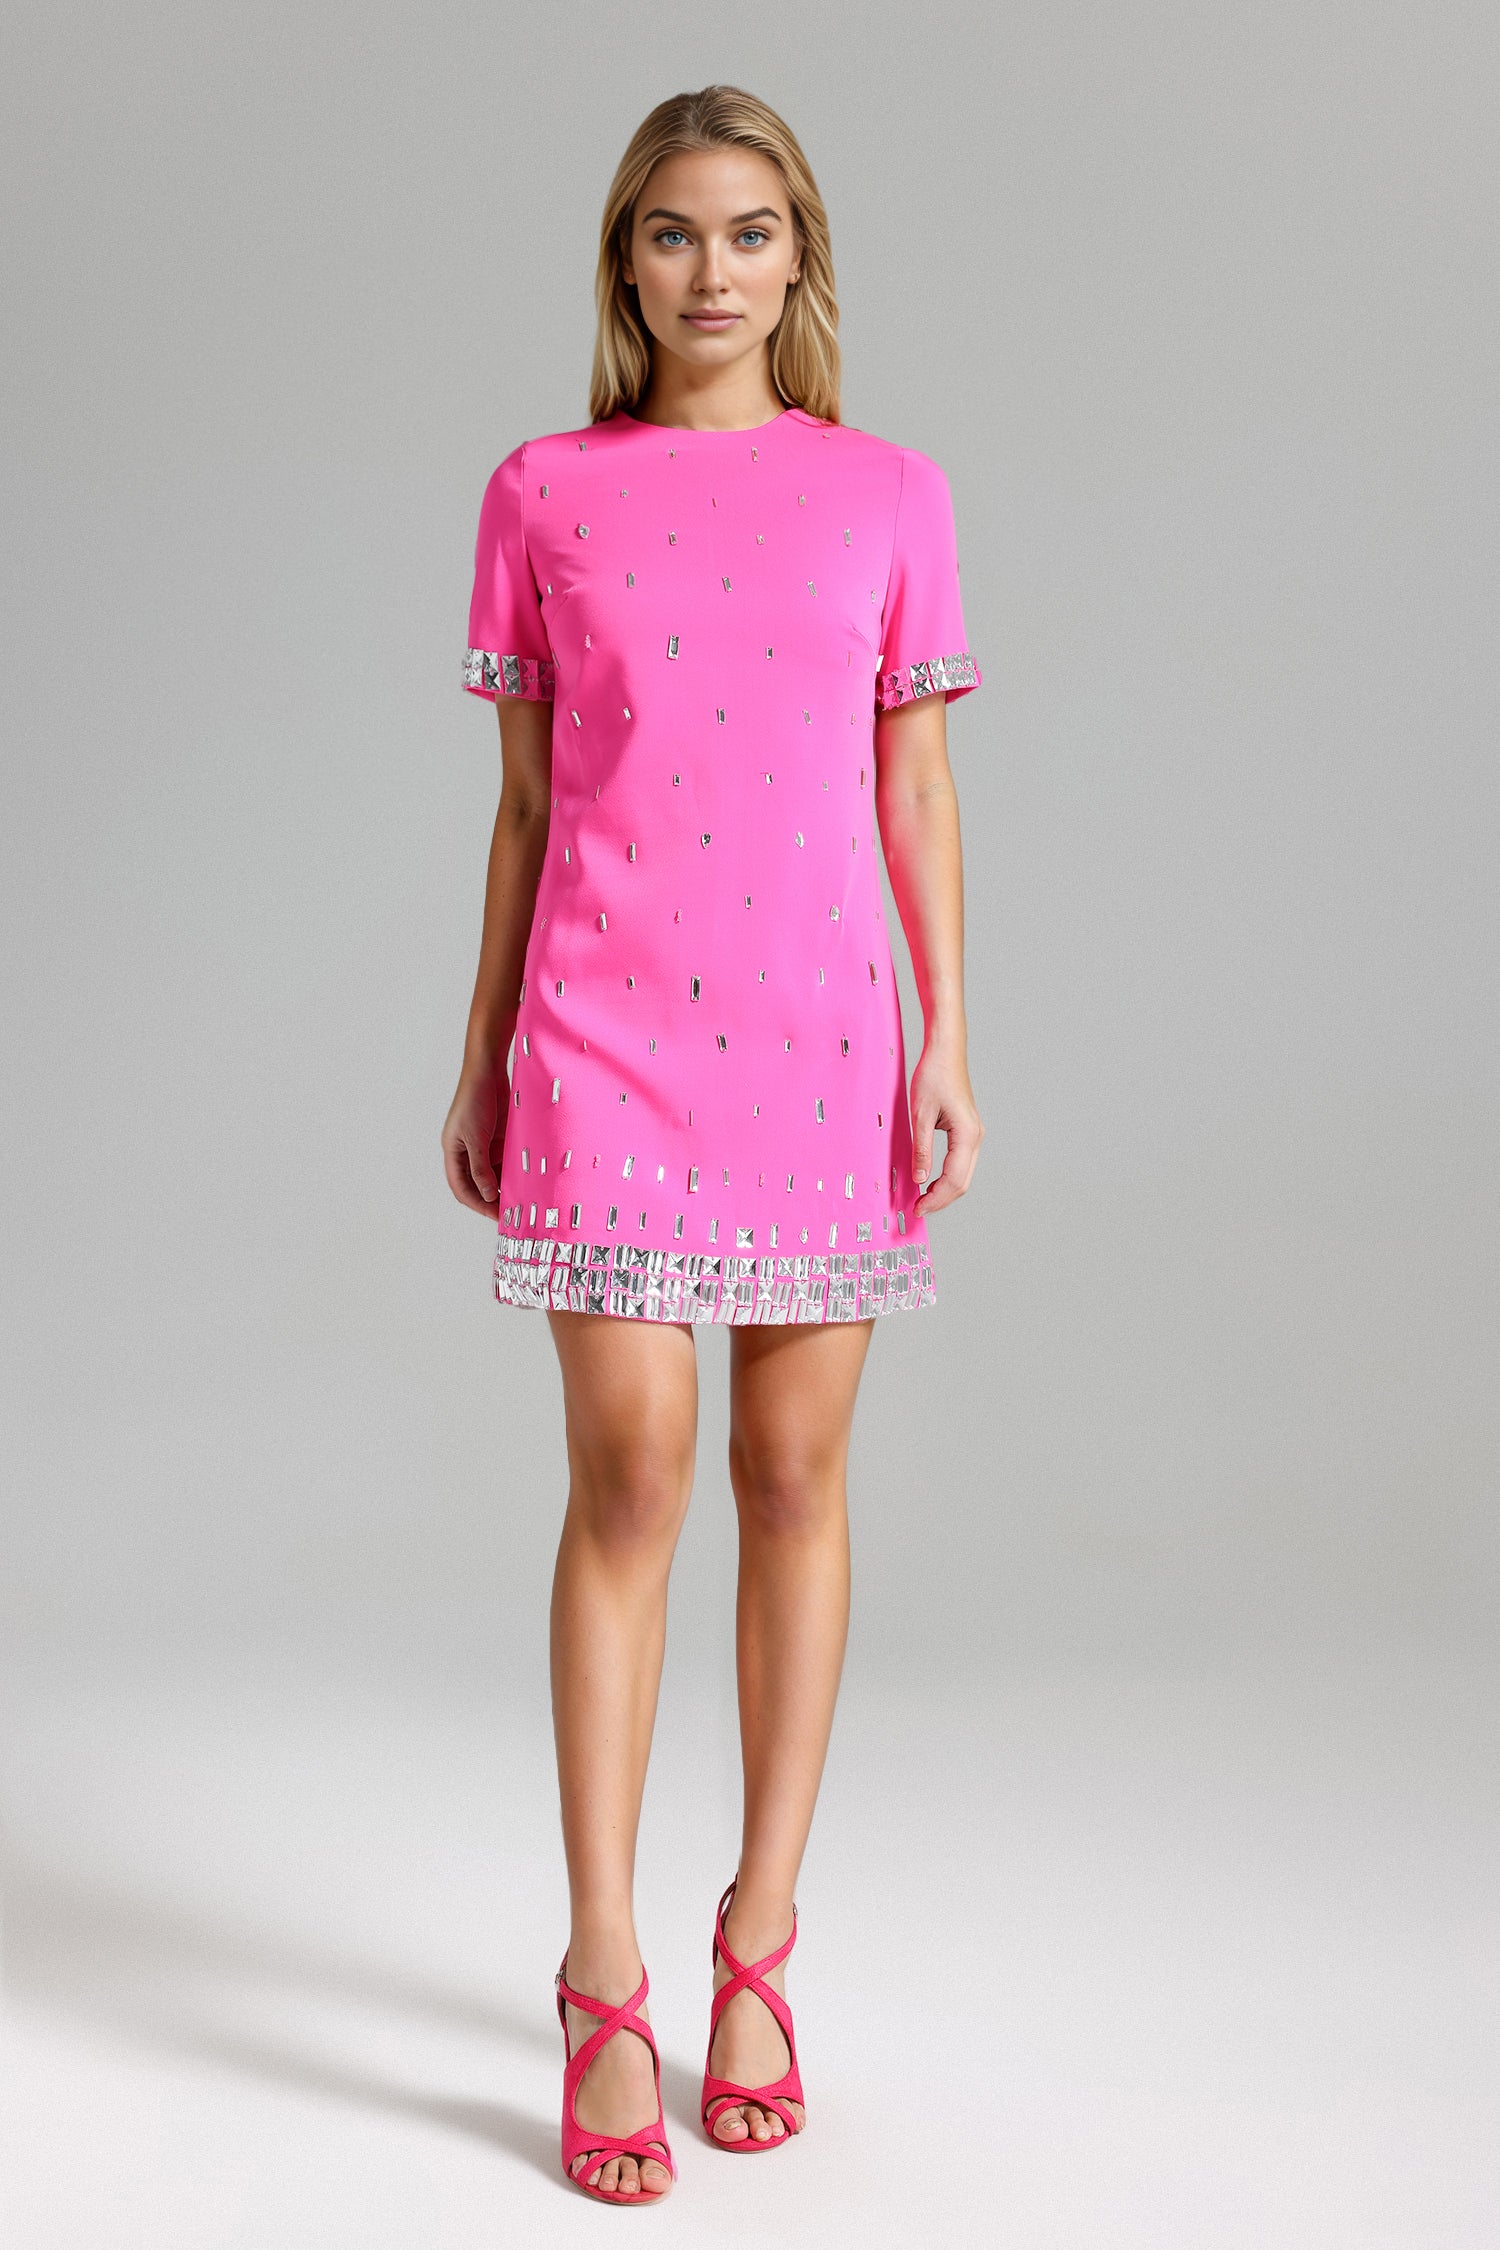 Lyla Diamated Mini Dress - Pink